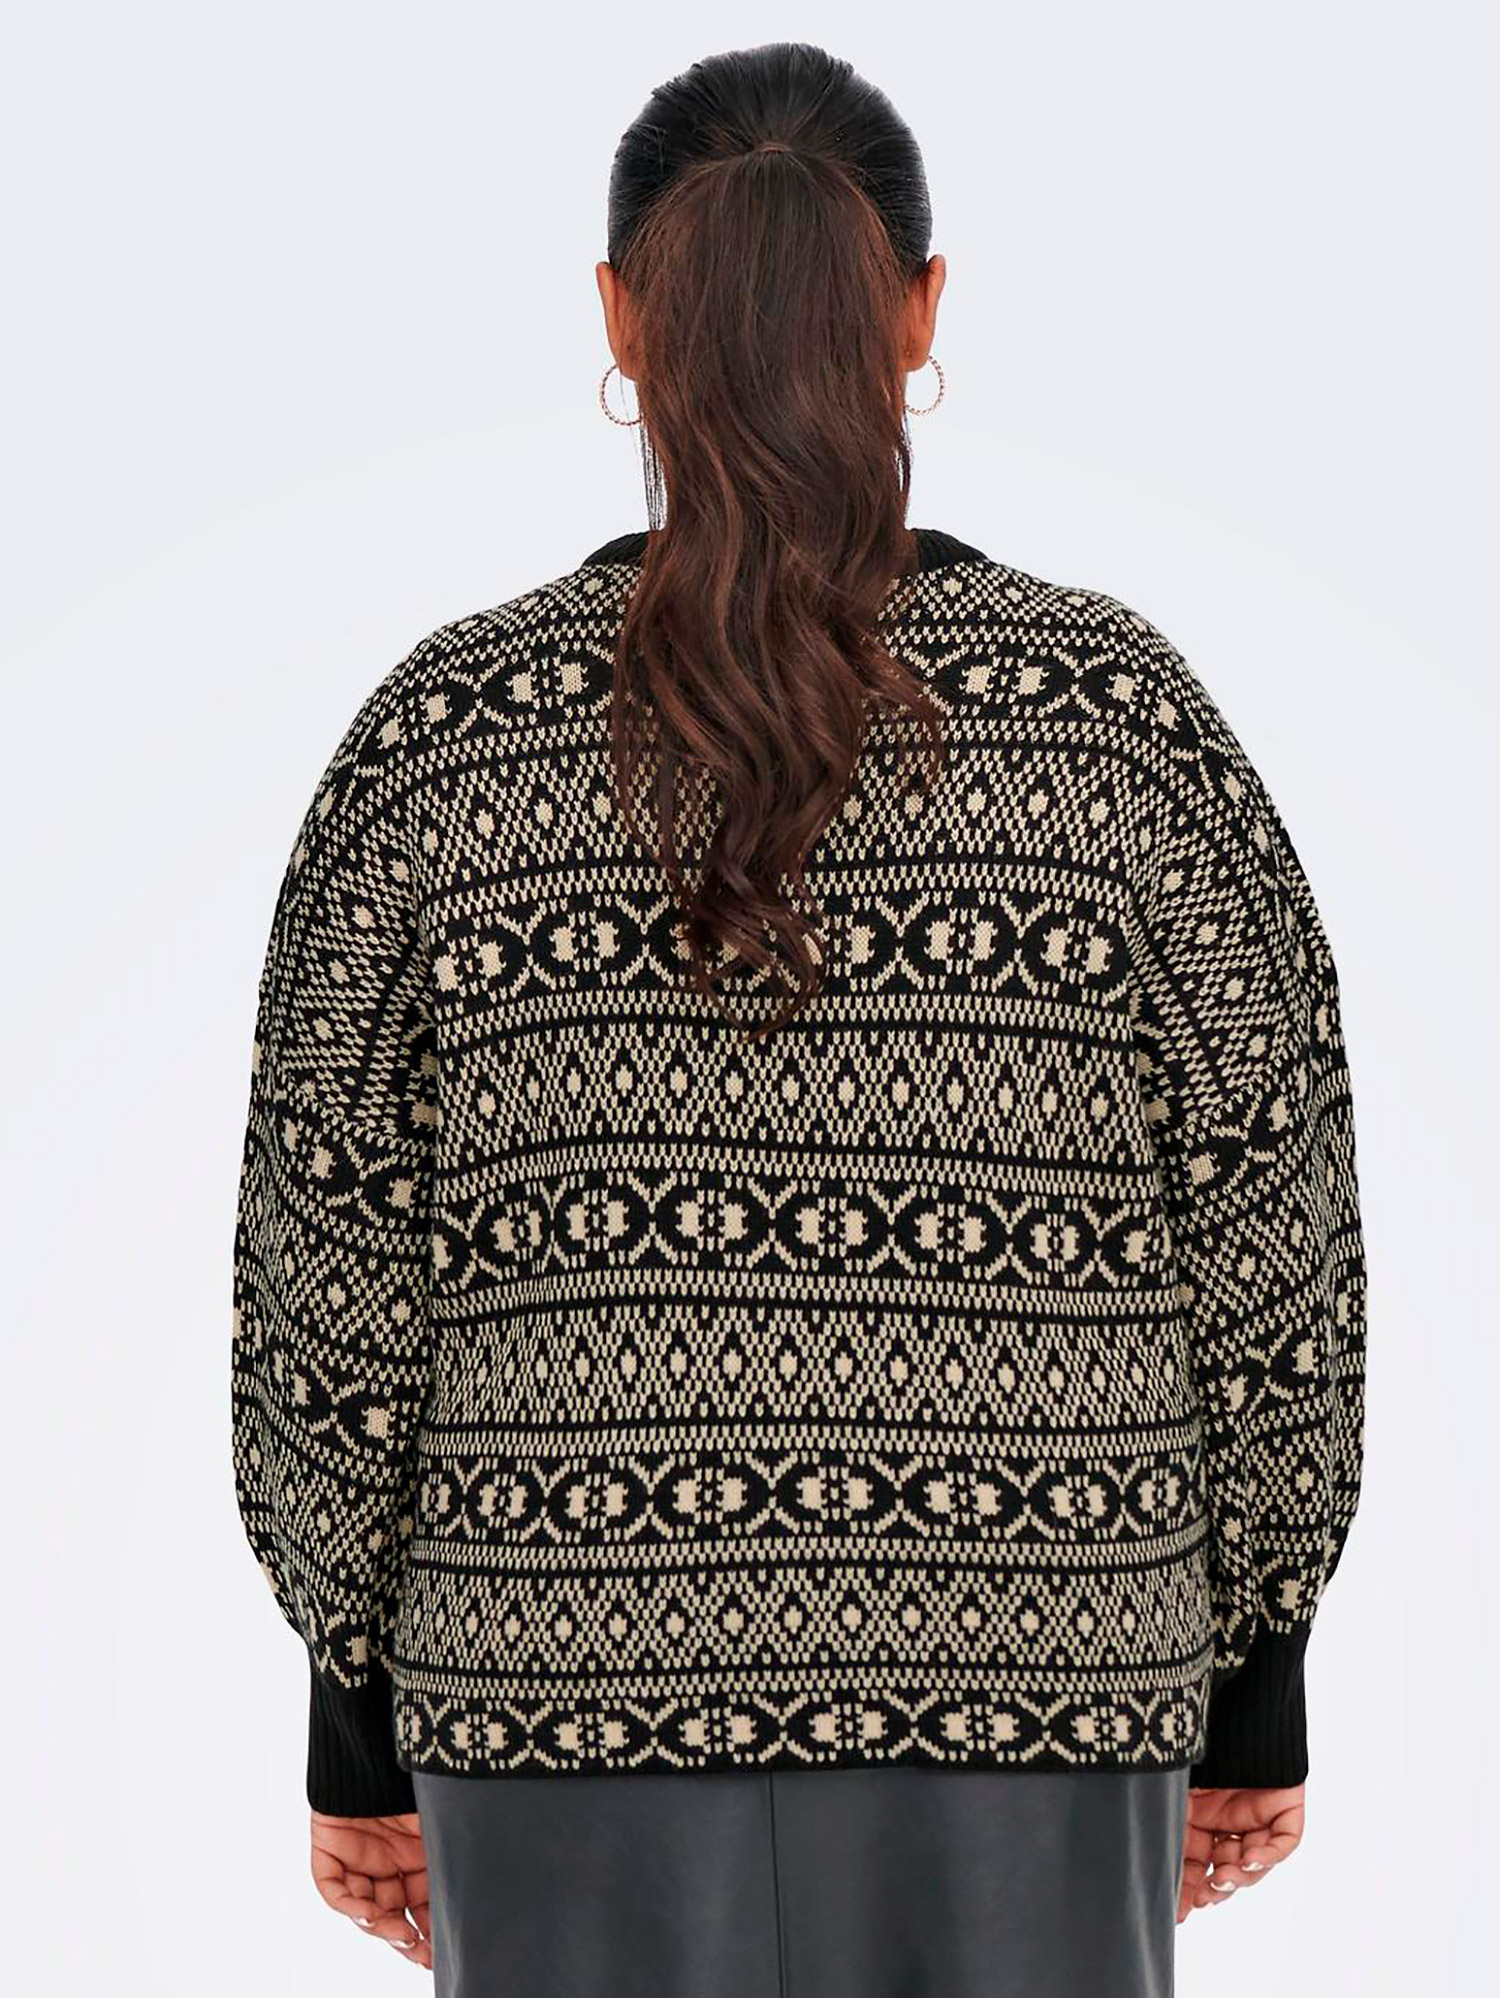 SIGRUN - Sort strik bluse med råhvid mønster fra Only Carmakoma